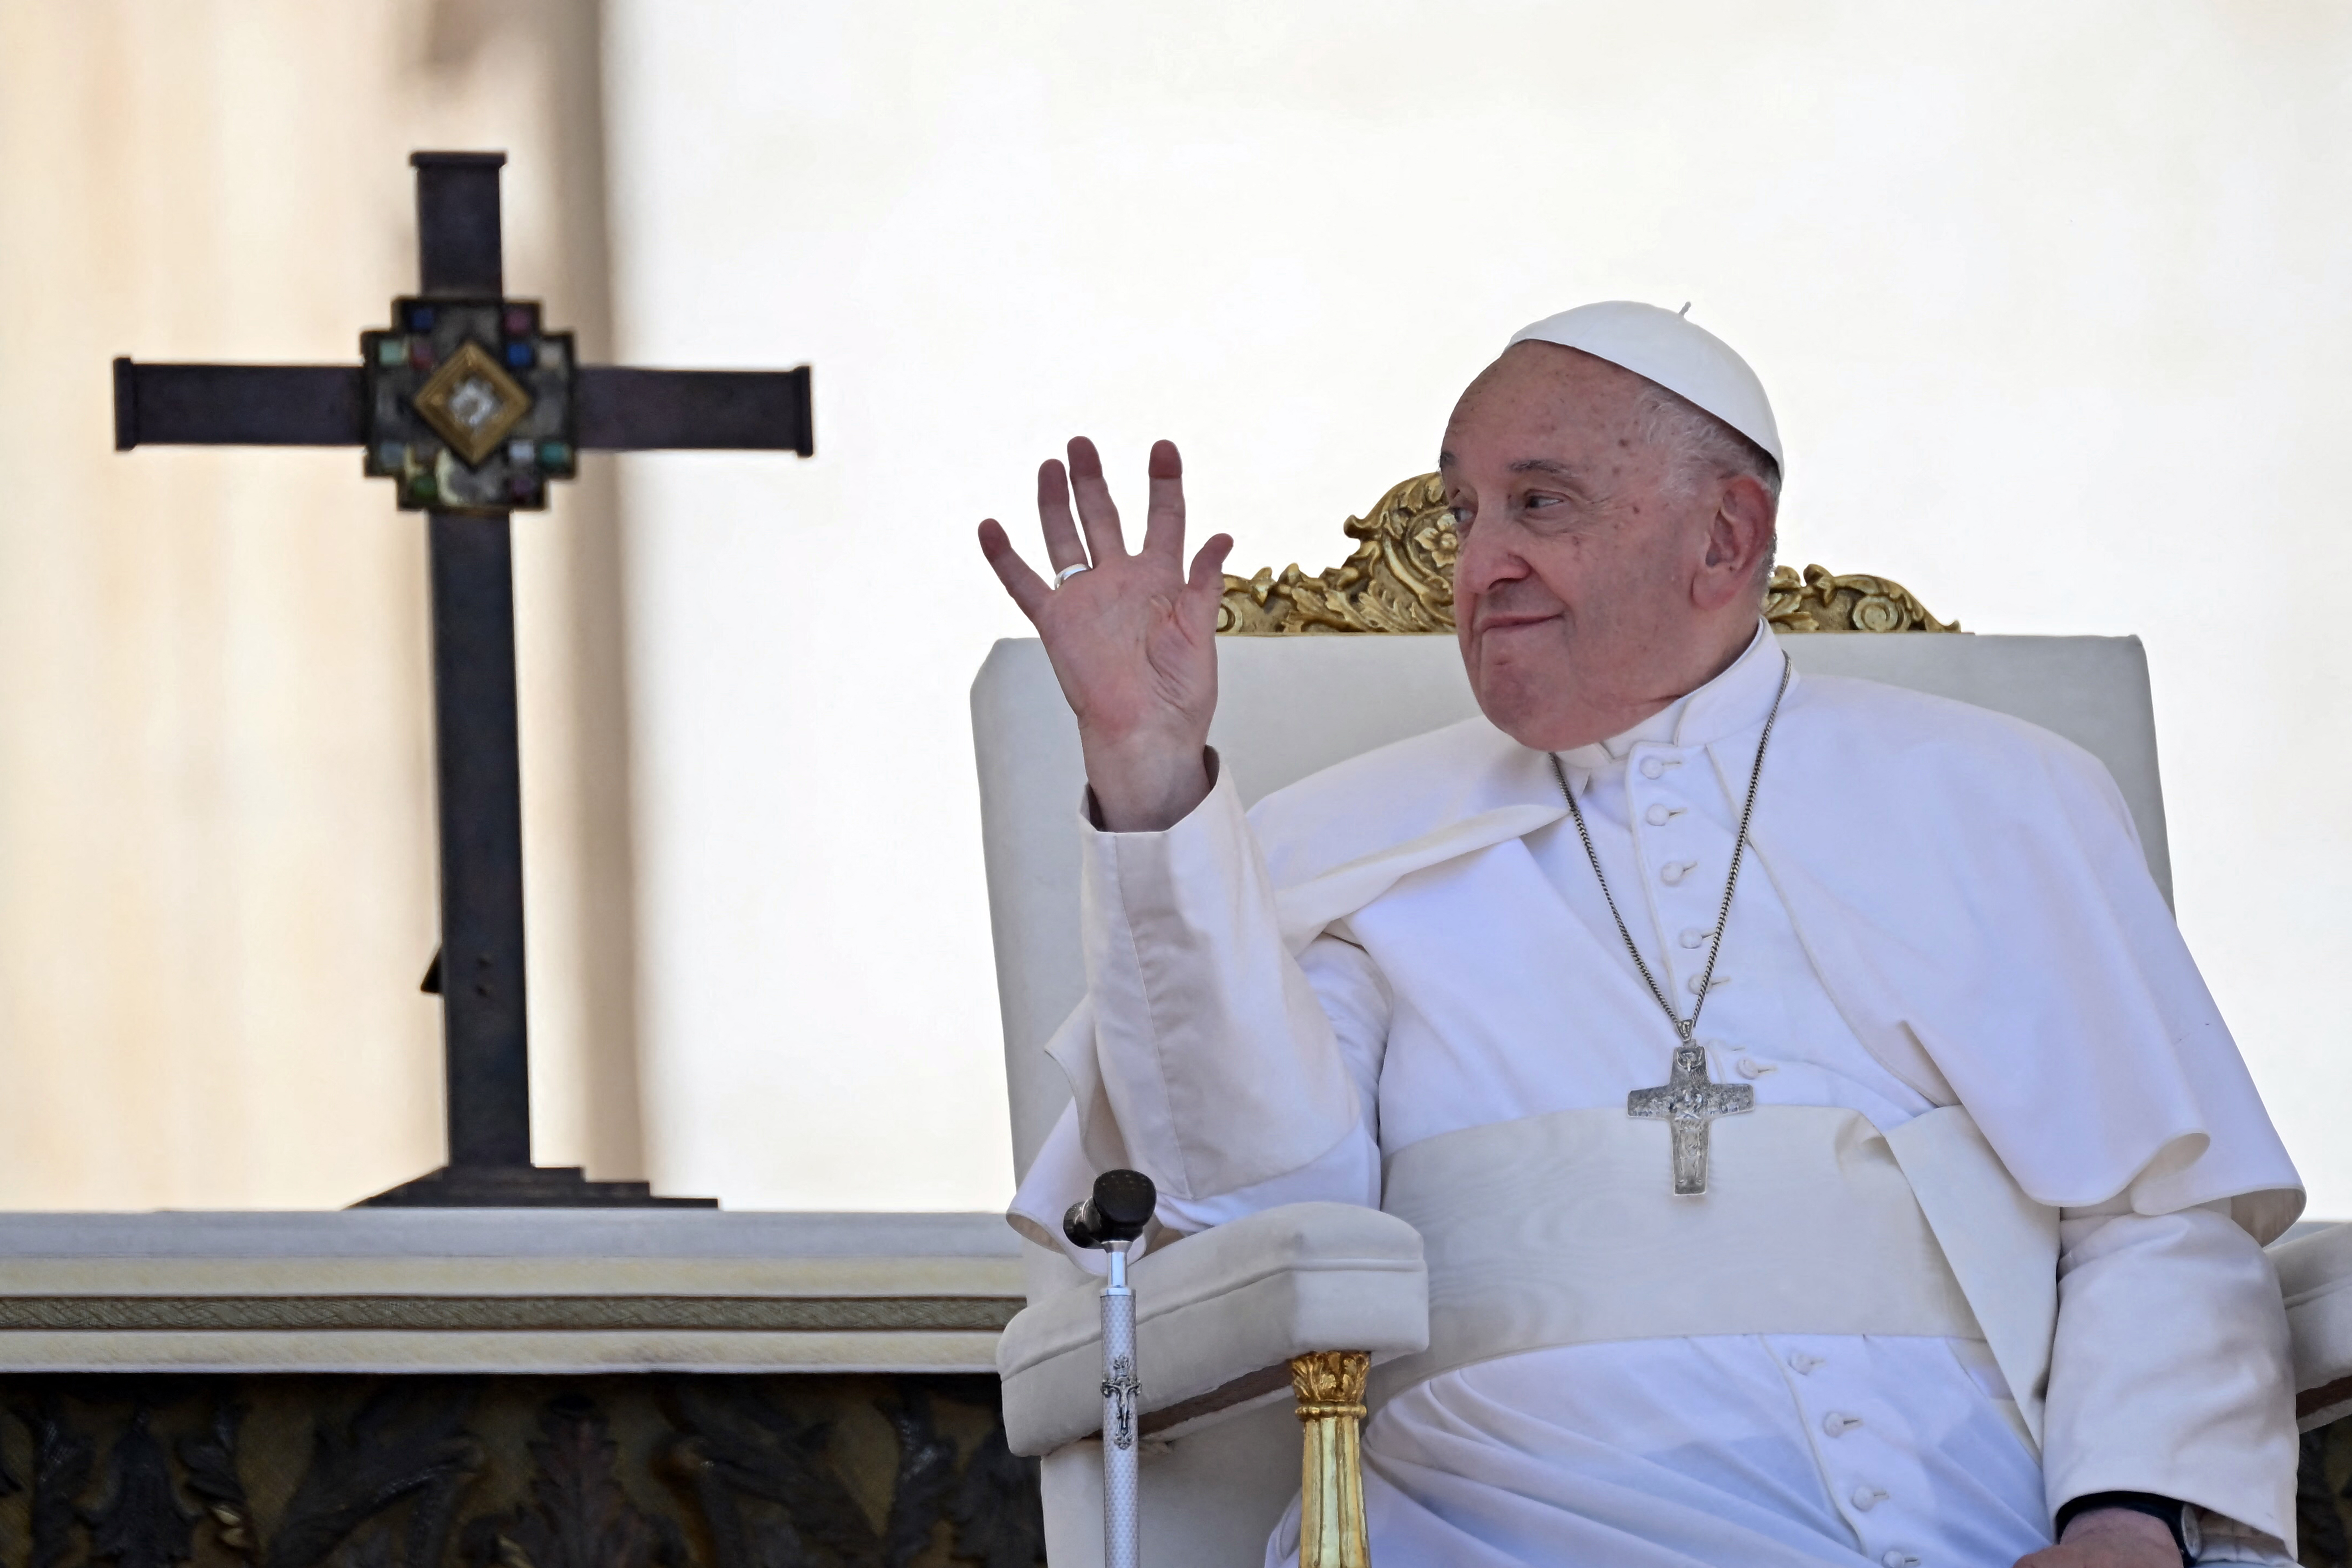 “Hay mucha mariconería en los seminarios”: la frase del papa Francisco que causó polémica en Italia